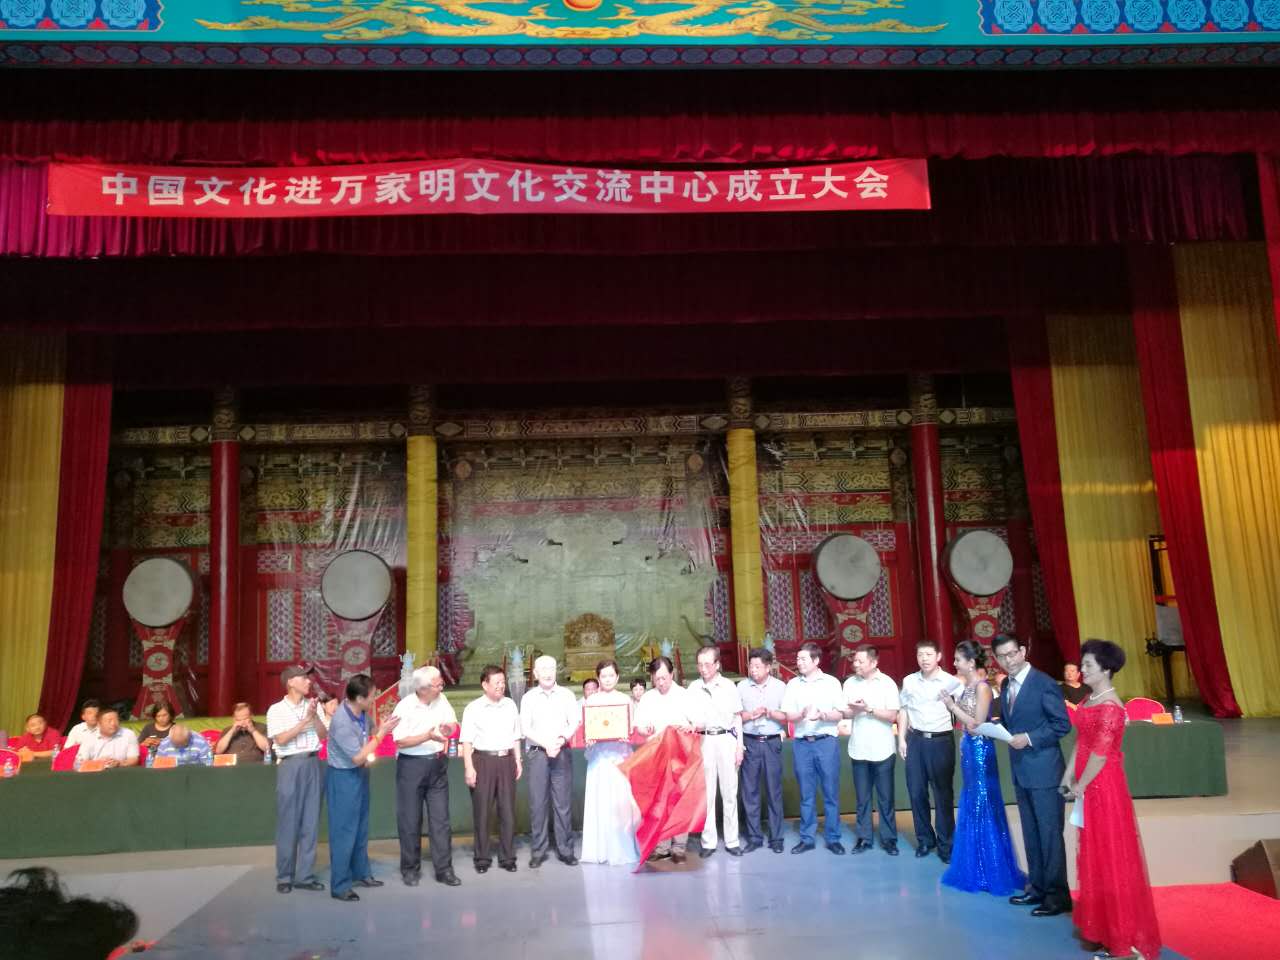 中国文化进万家明文化交流中心在北京昌平十三陵景区成立